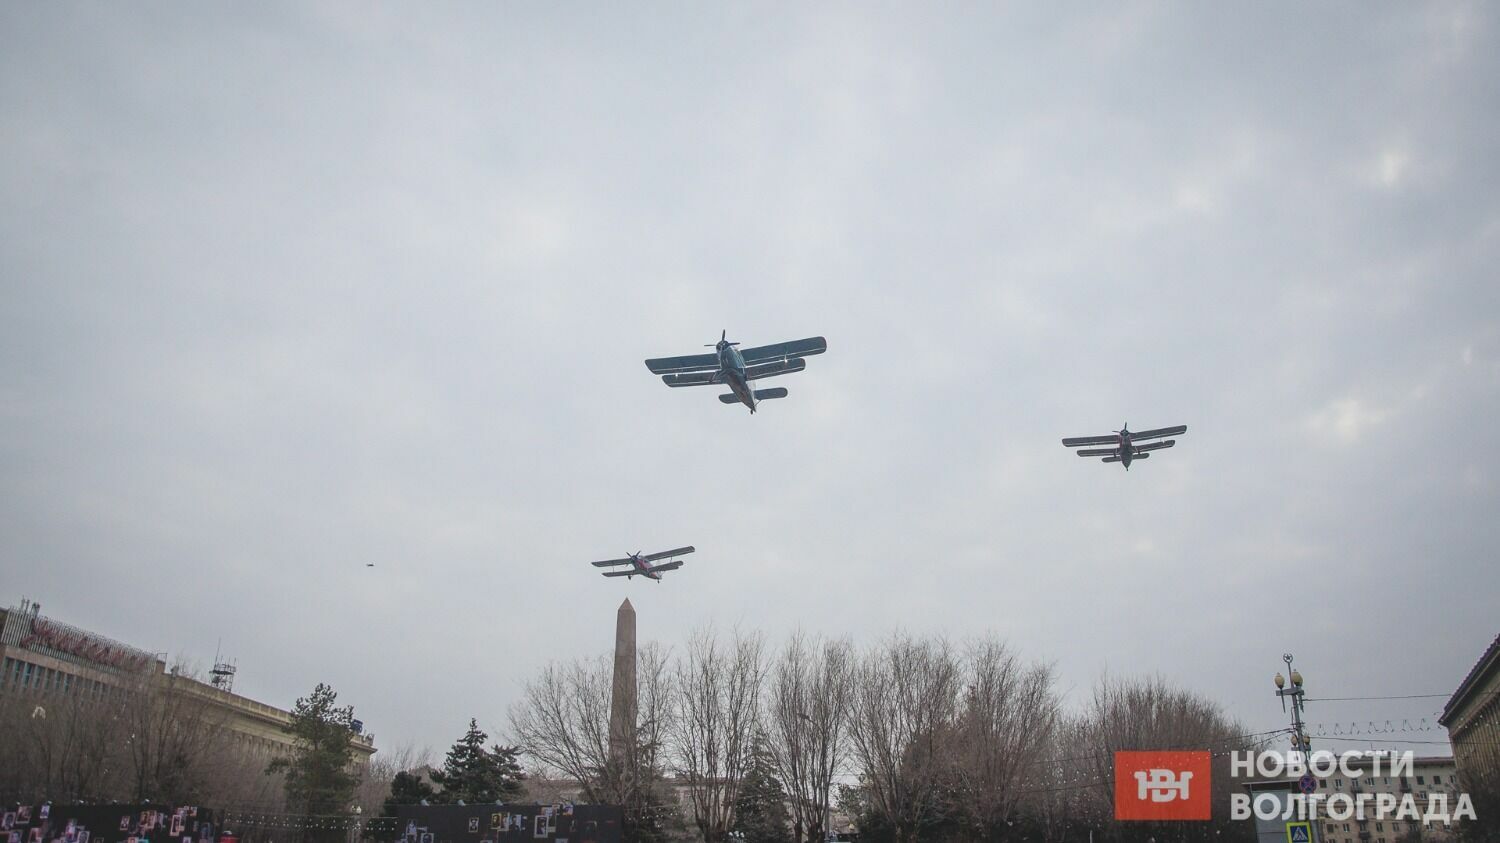 Завершил парад пролёт самолётов АН-2, сбросивших на площадь сотни тематических листовок